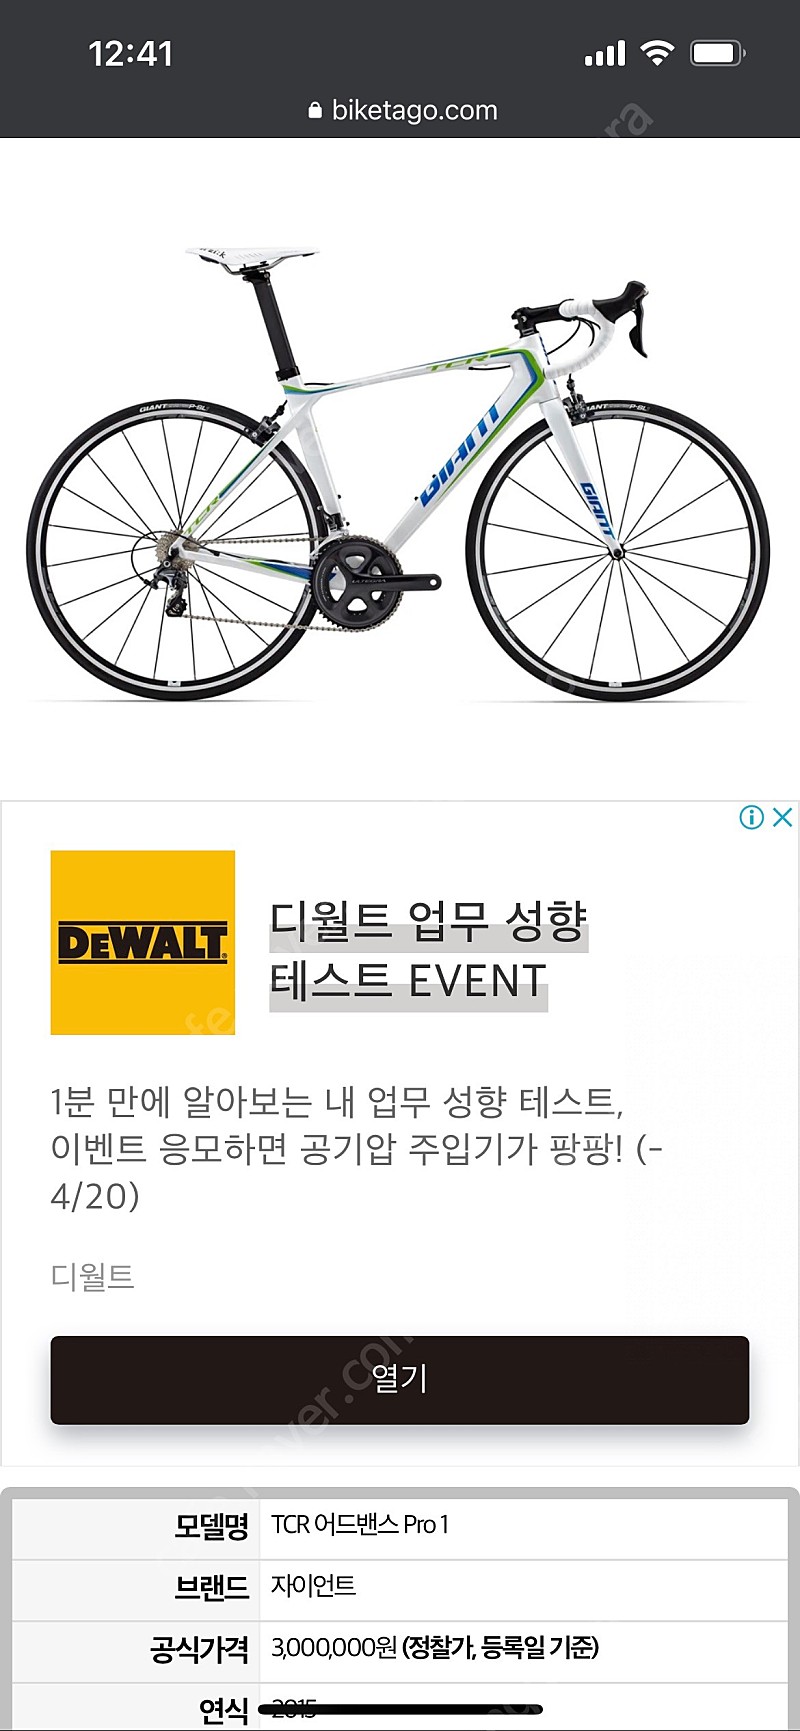 서울) 2015 자이언트 tcr프로1 카본 로드자전거